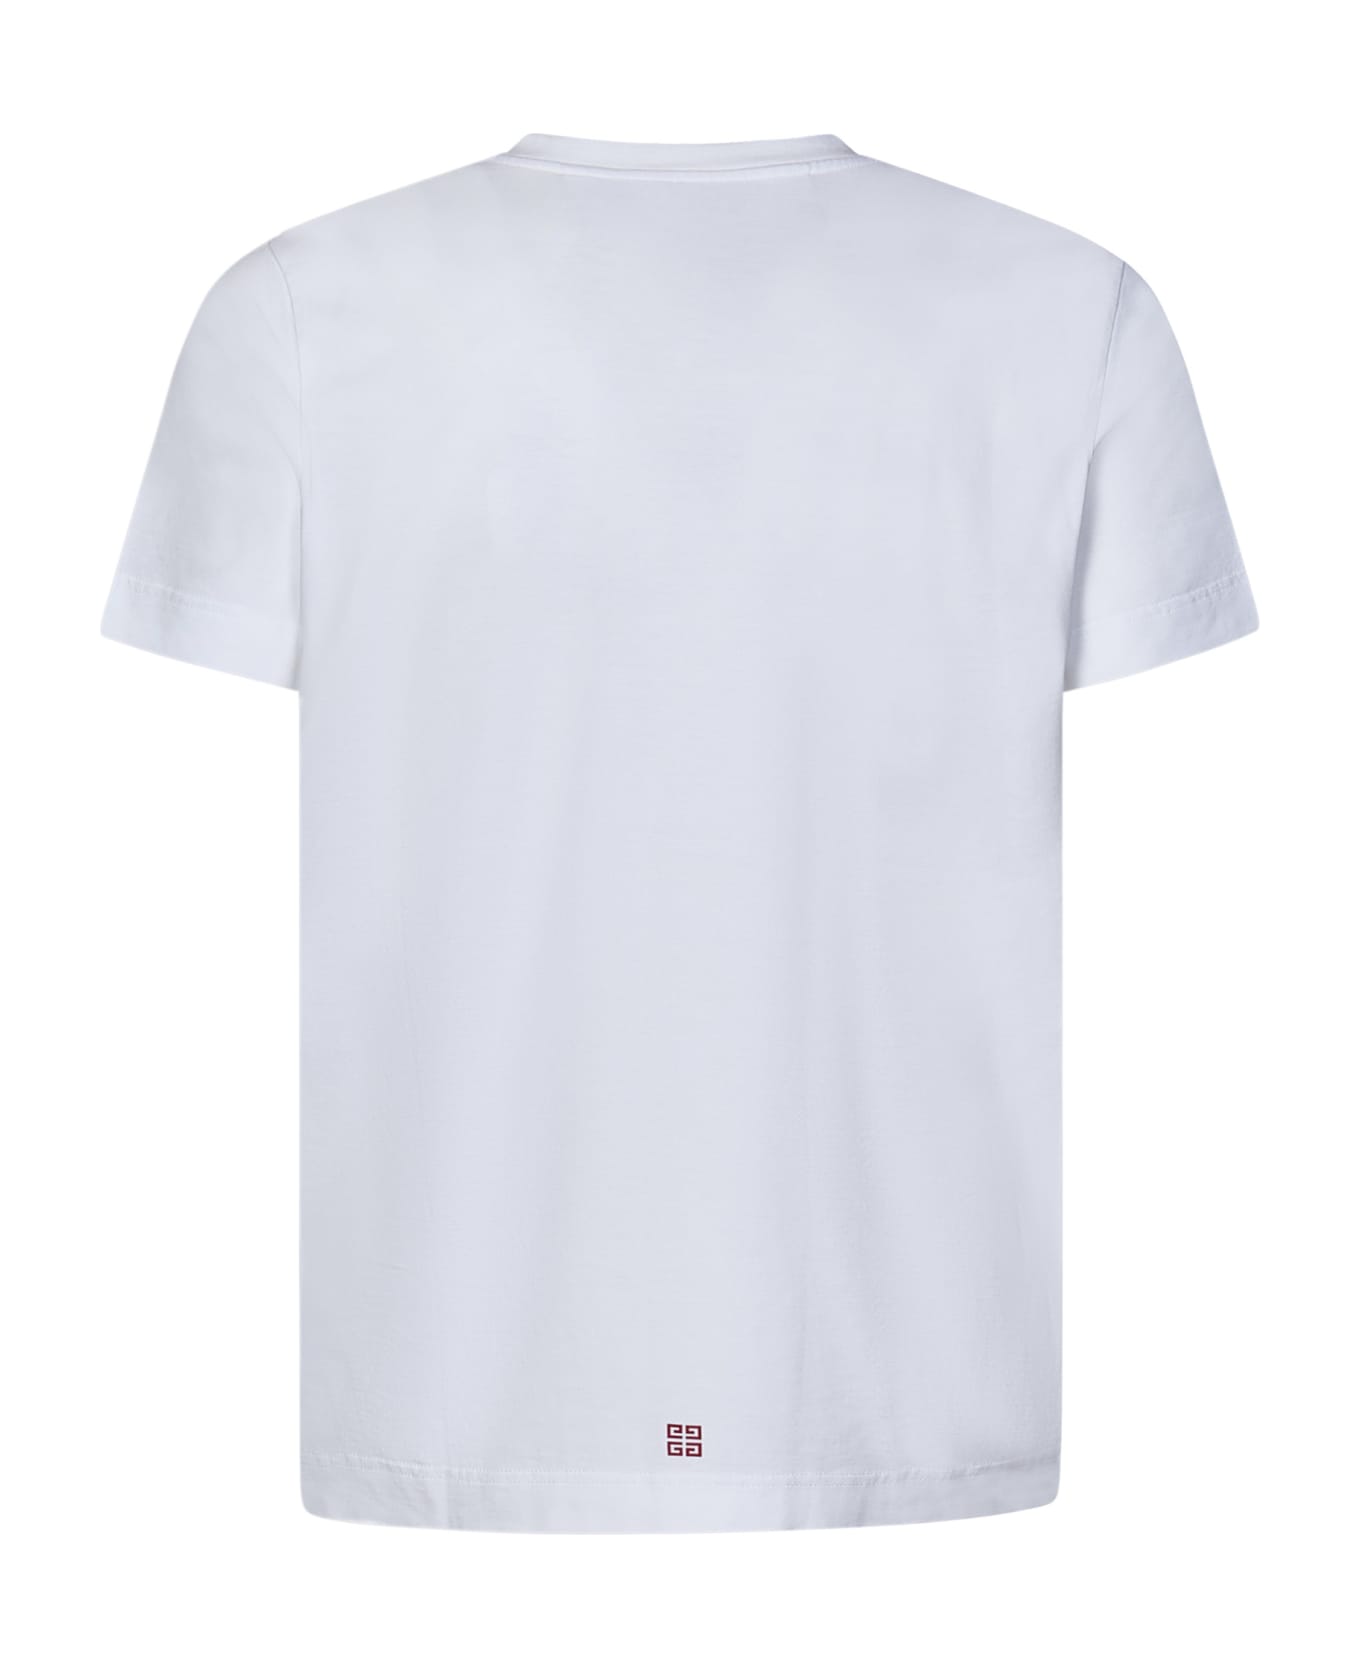 Givenchy 4g Stars T-shirt - White